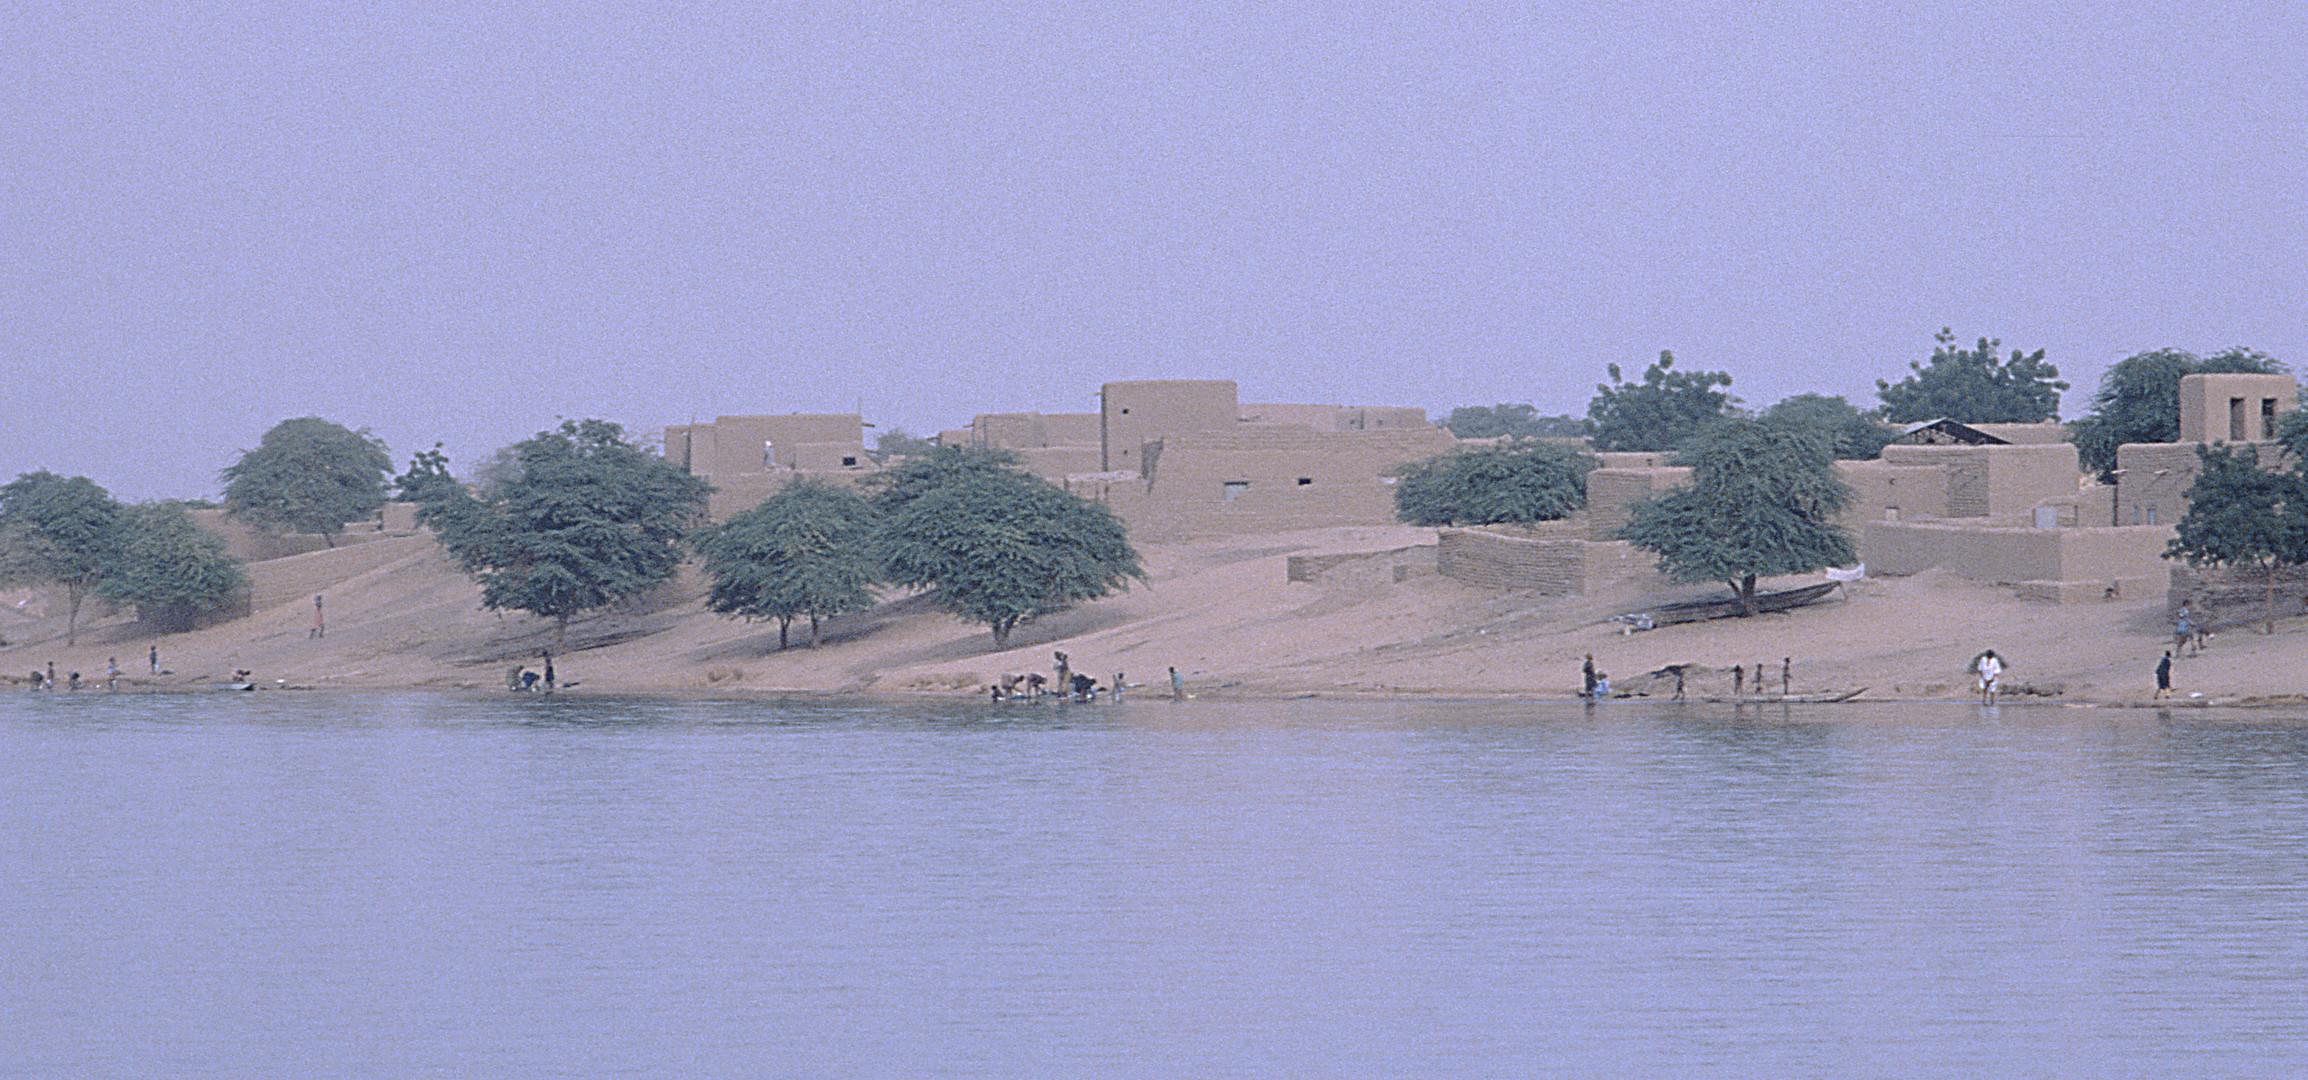 Villaggio sul Niger (Mali)